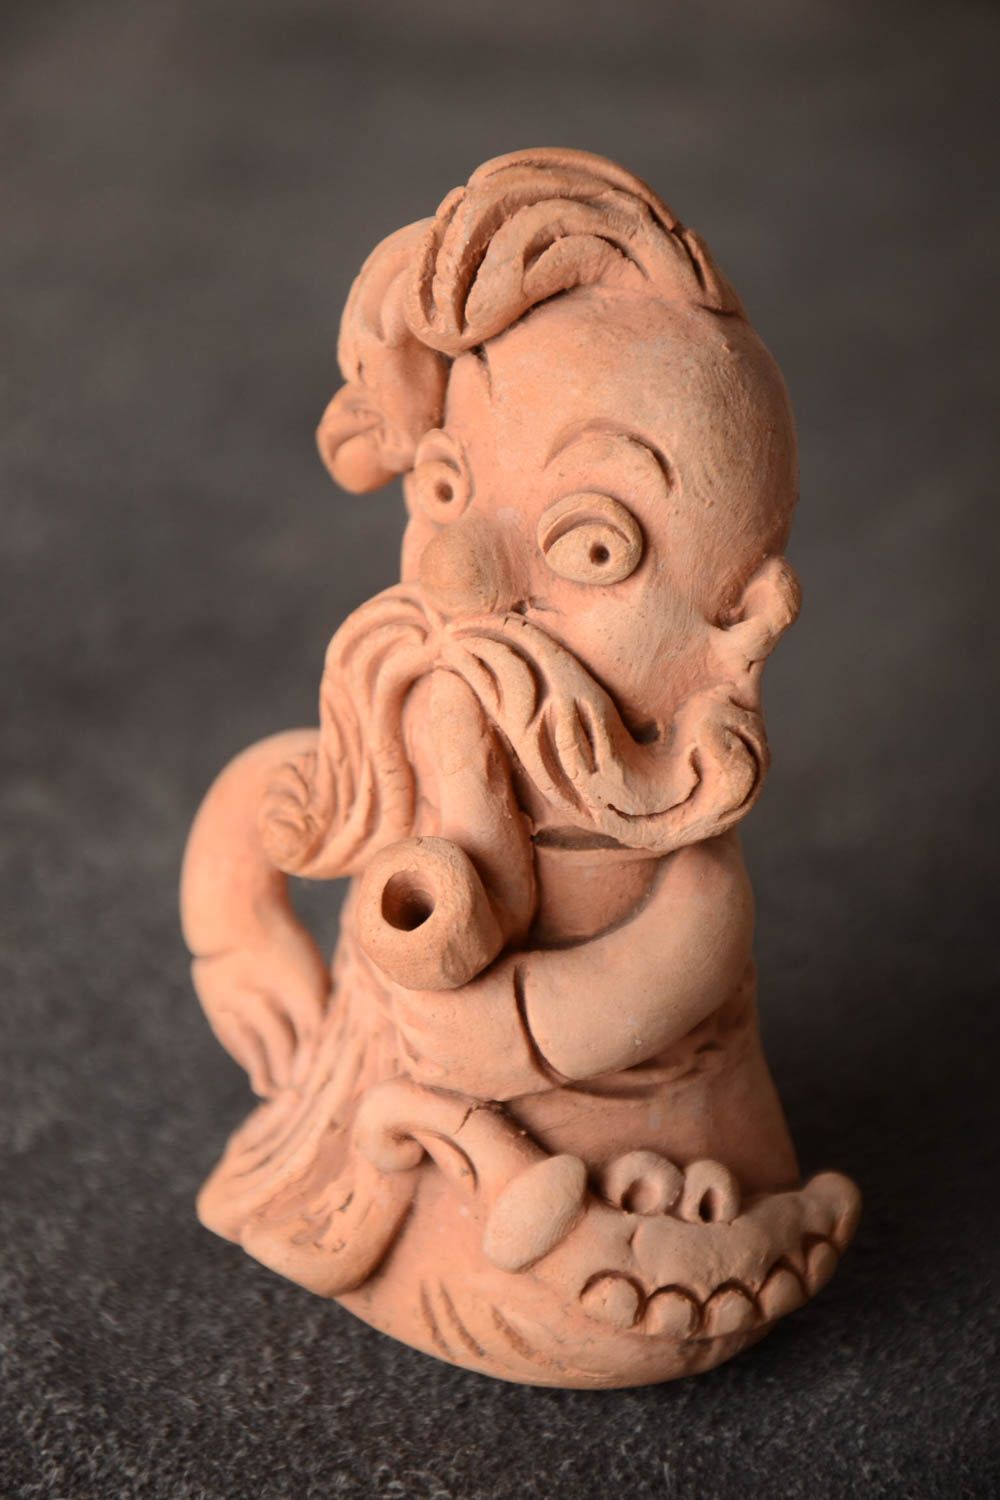 Фигурка из глины казак лепная маленького размера для декора бежевая хэнд мейд фото 1